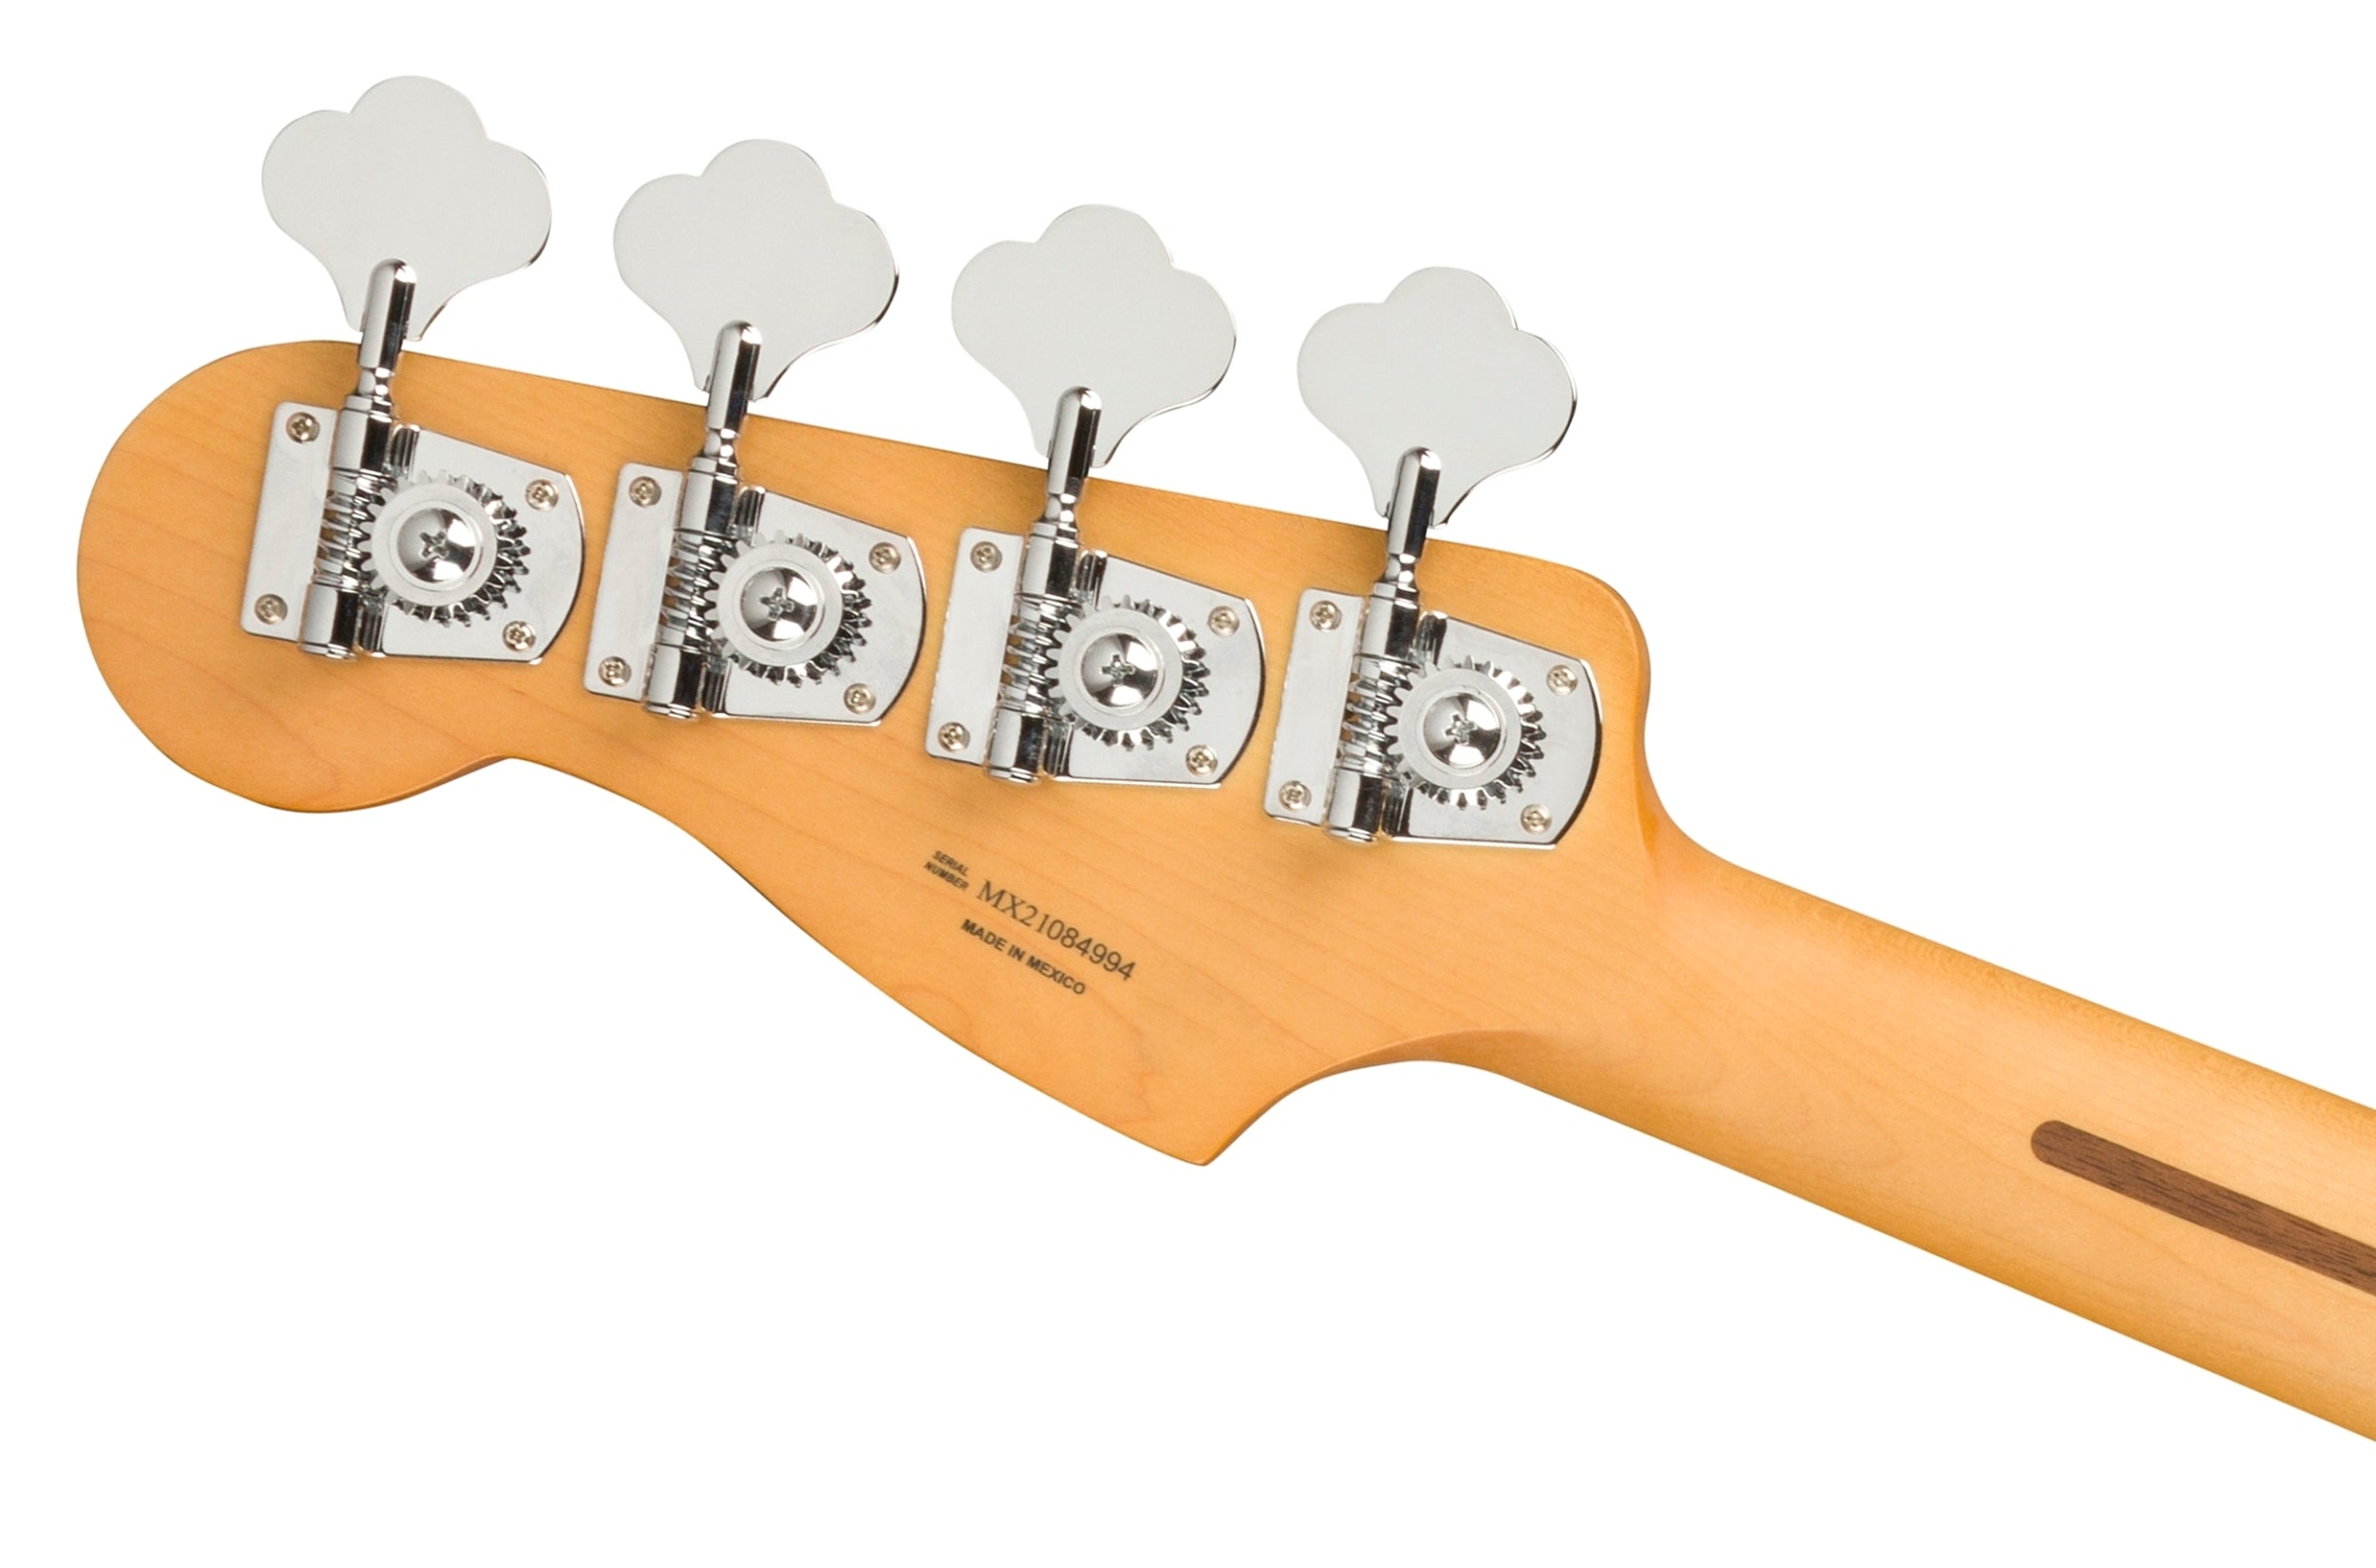 Fender Player Plus Active Precision Electric Bass - 3 Tone Sunburst